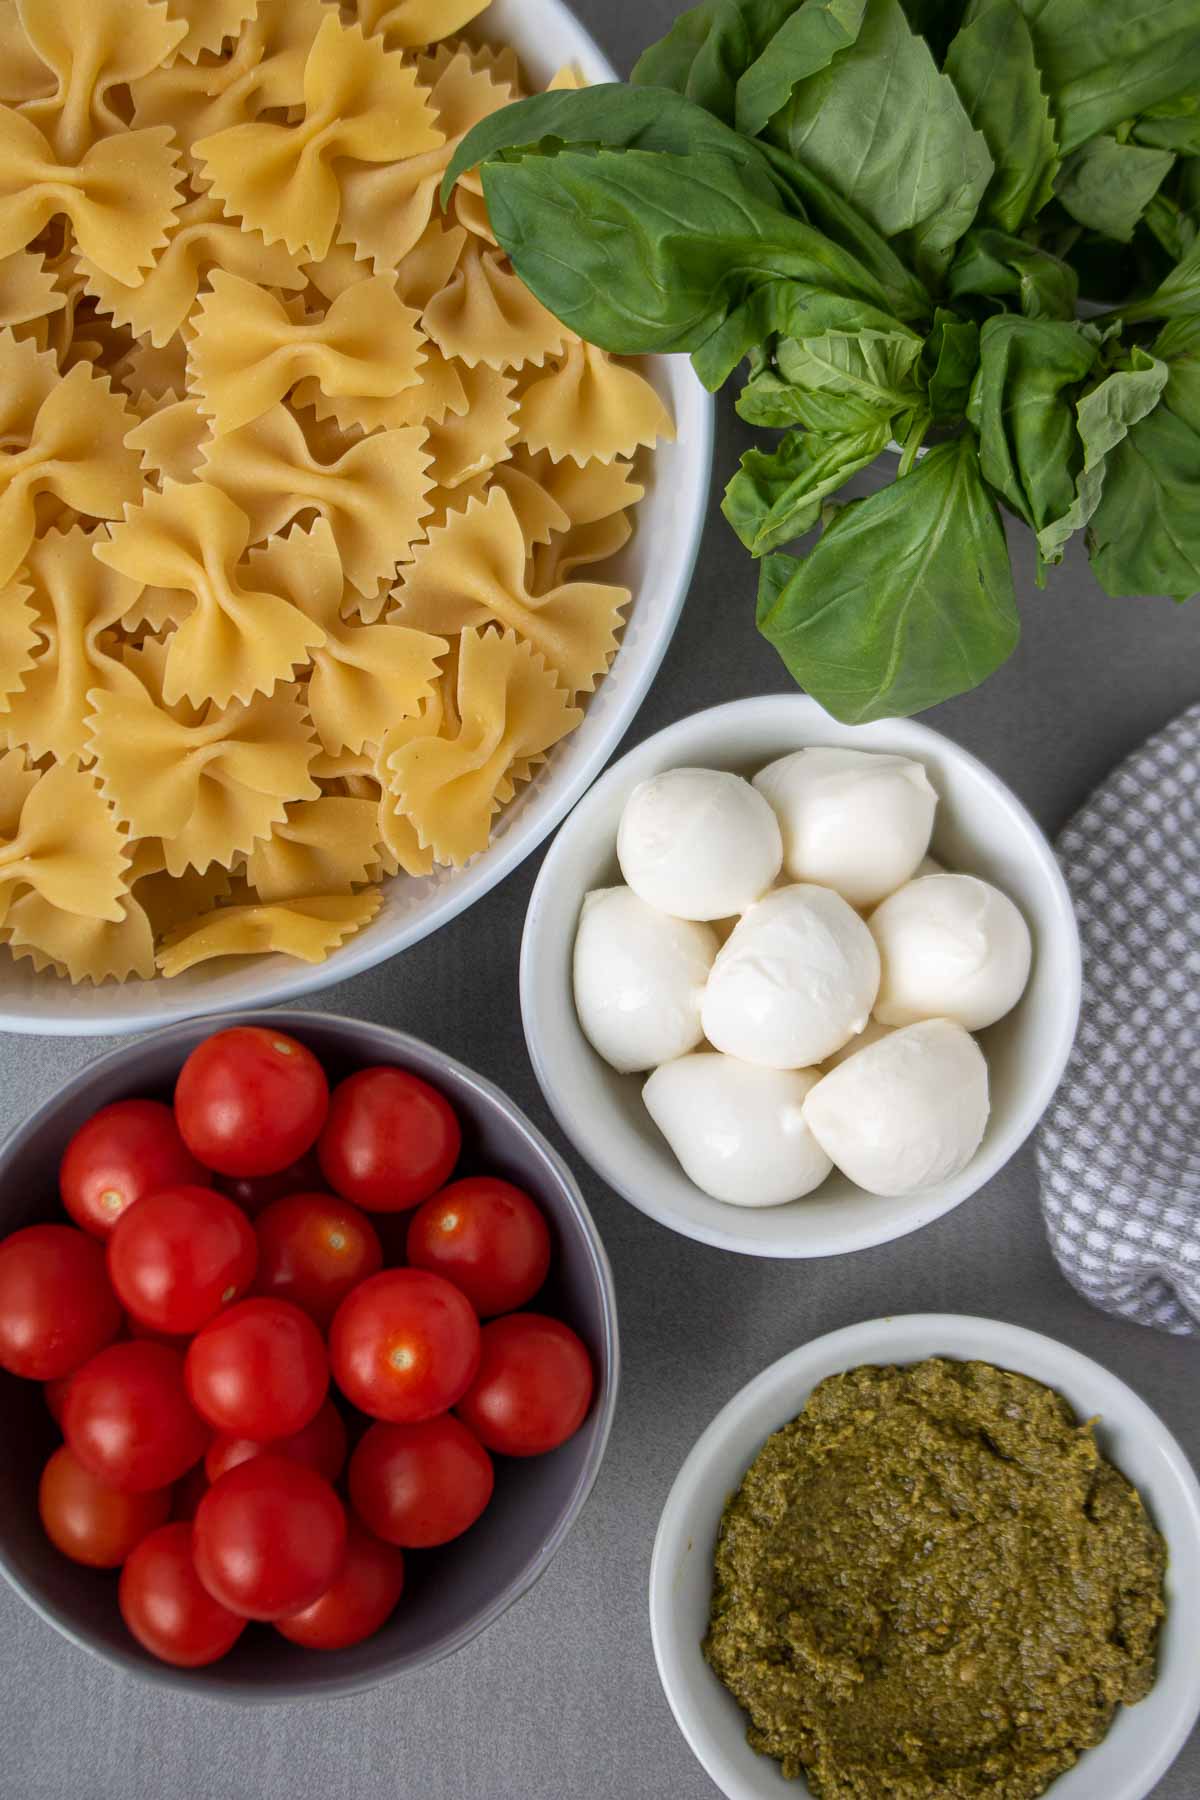 Ingredients for bow tie pasta salad: farfalle pasta, mozzarella cheese, tomatoes, basil, and pesto.